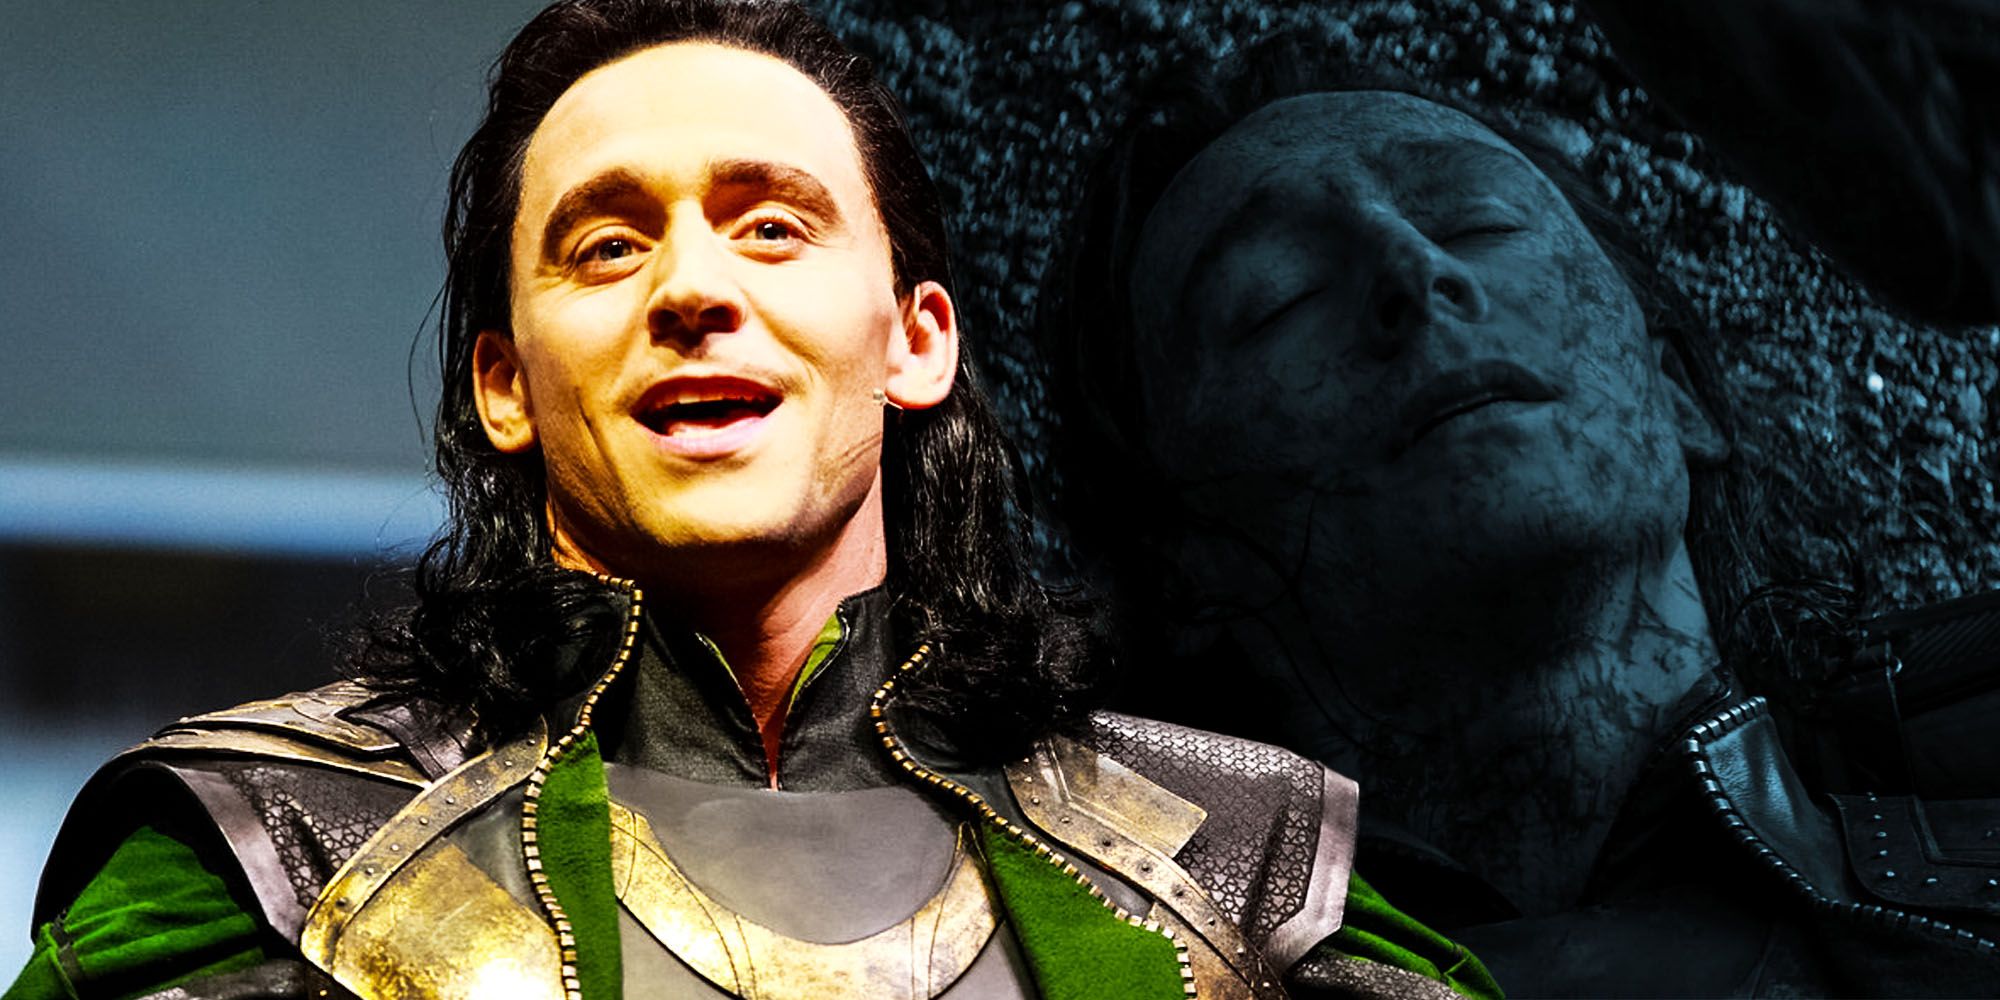 Loki is DB Cooper in new Loki Disney trailer  kgwcom